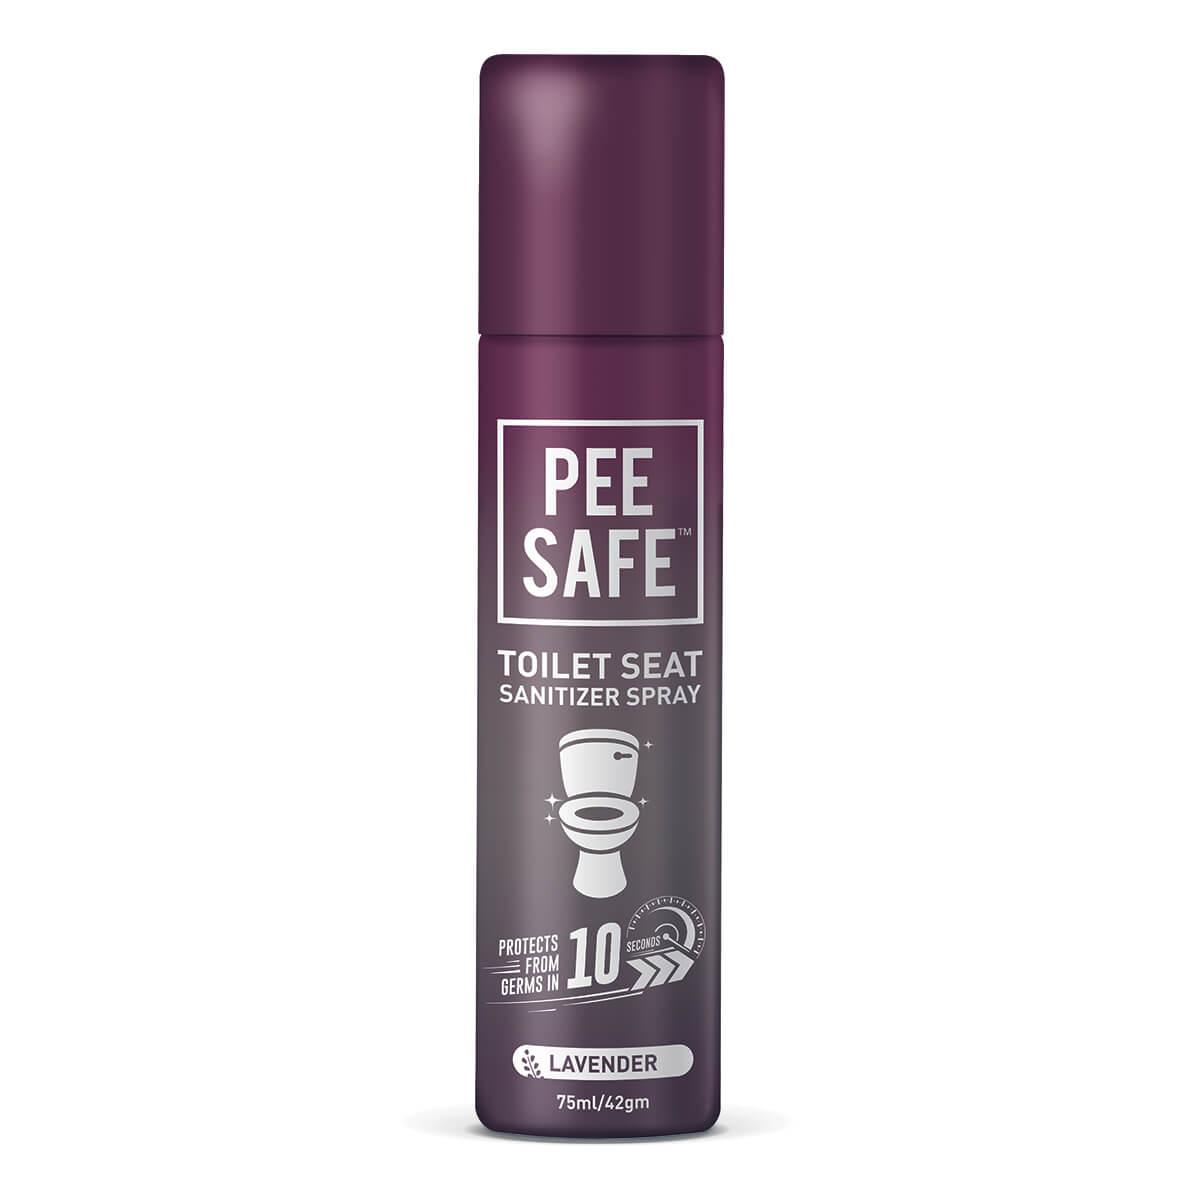 Pee Safe Toilet Seat Sanitizer Spray 75ml...